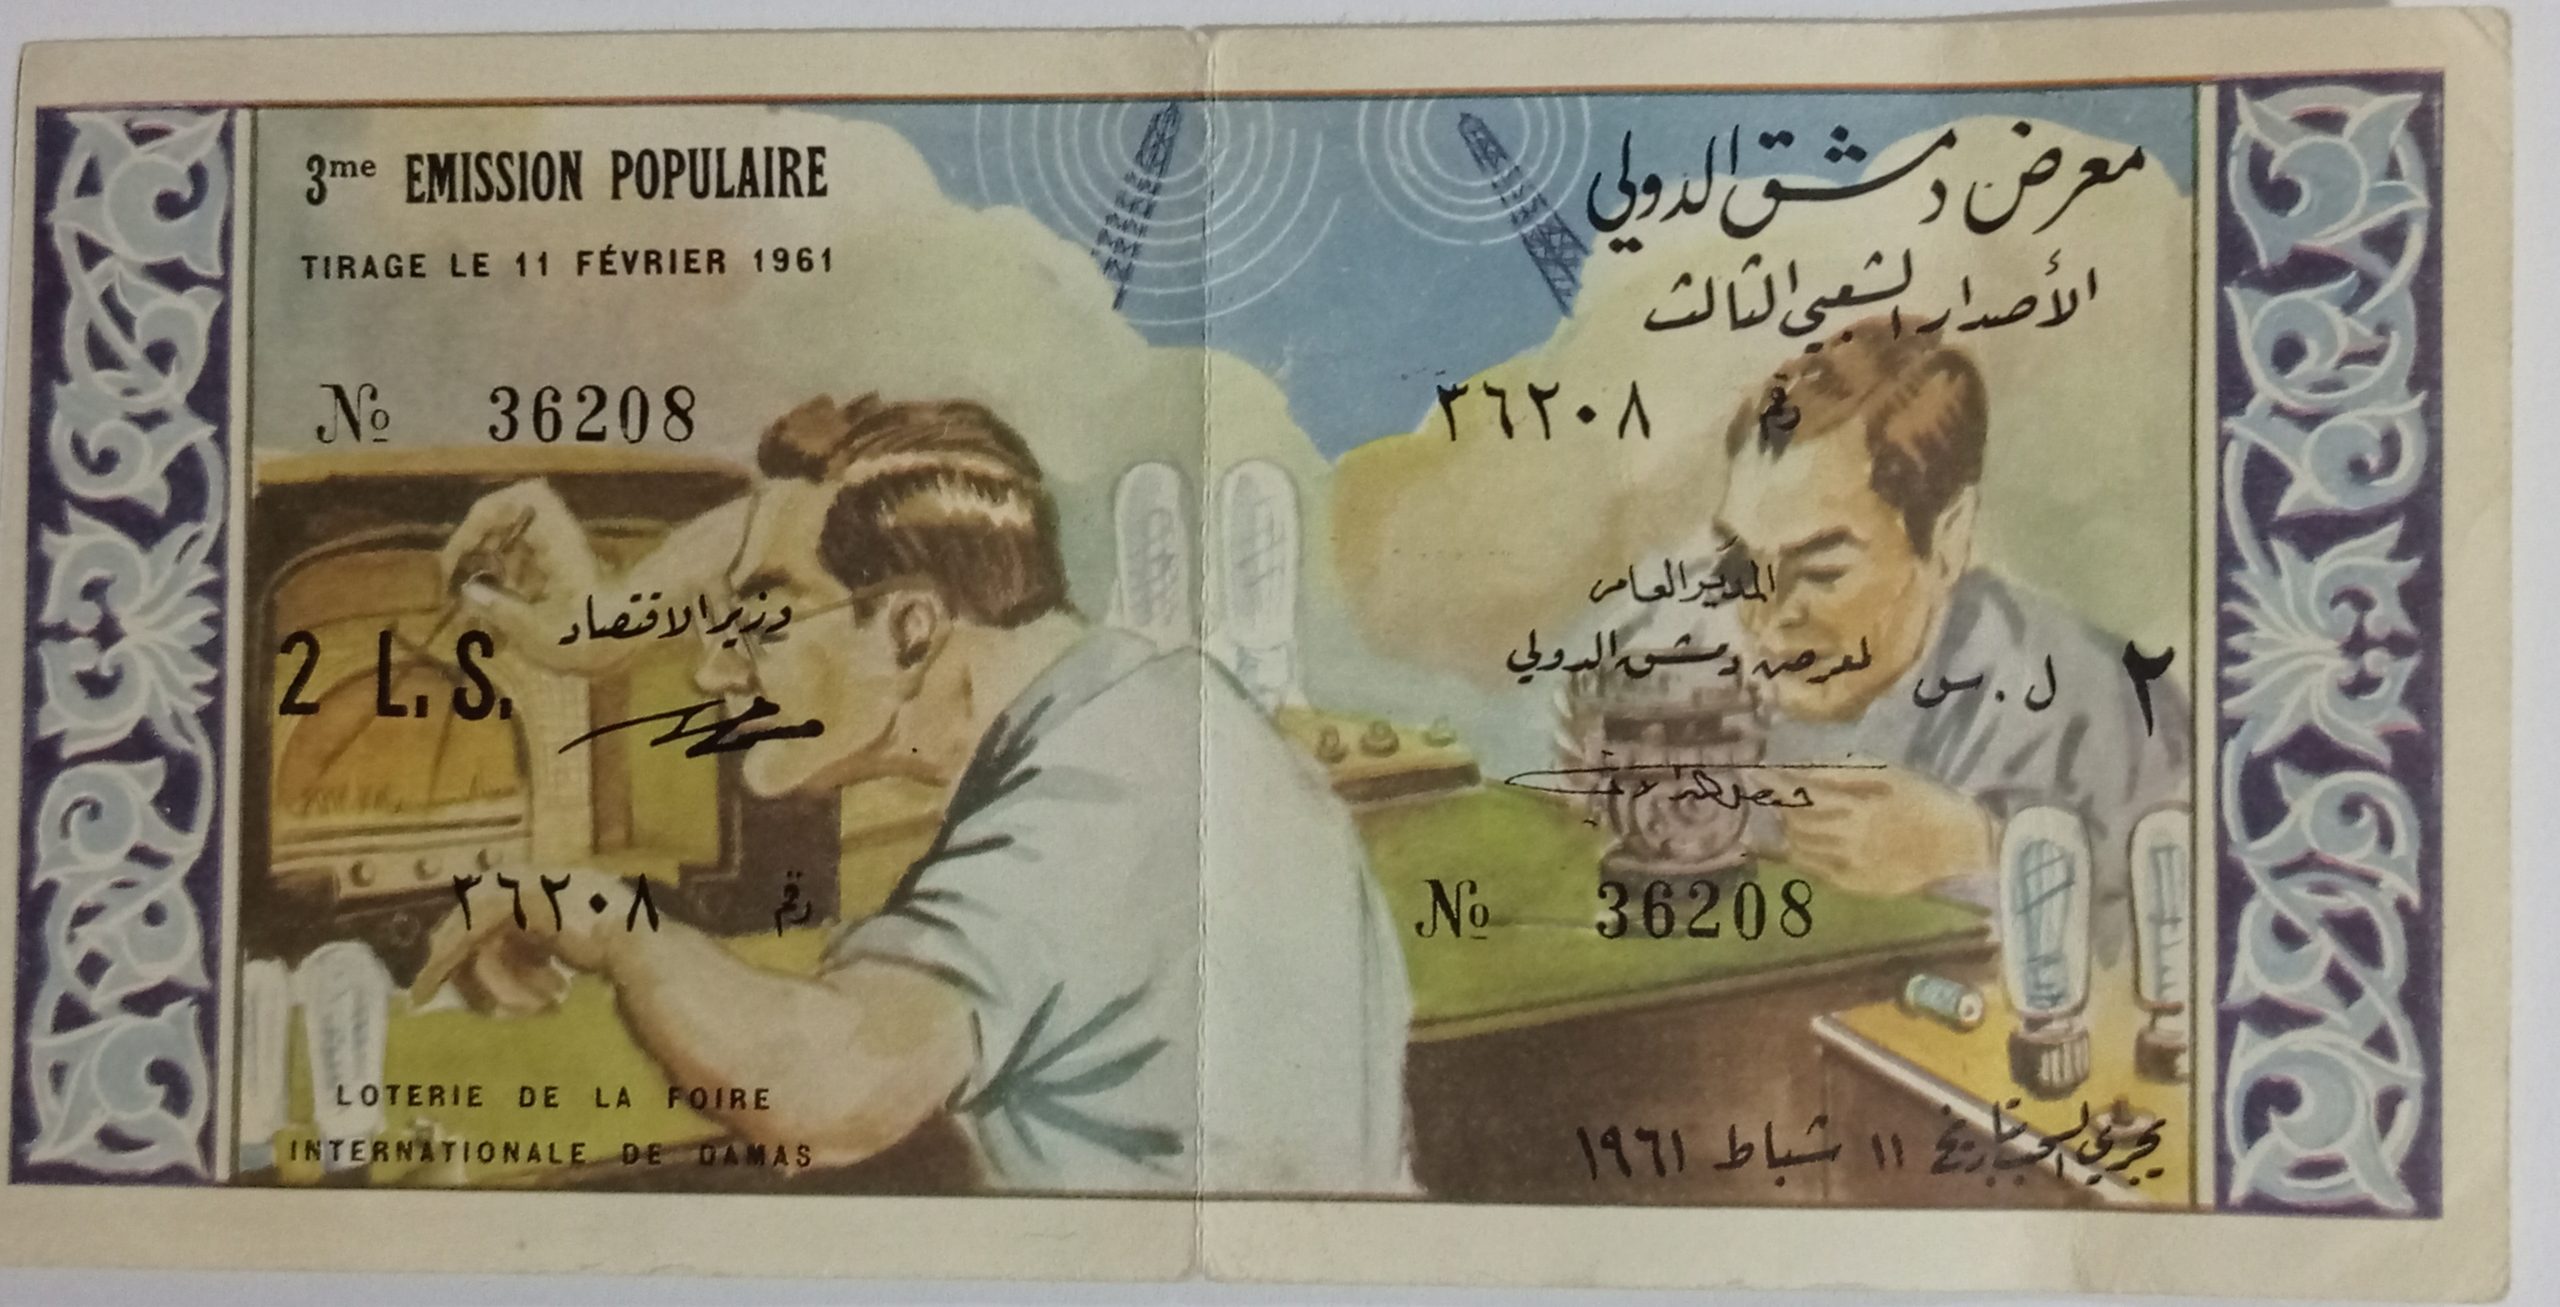 التاريخ السوري المعاصر - يانصيب معرض دمشق الدولي - الإصدار الشعبي الثالث عام 1960